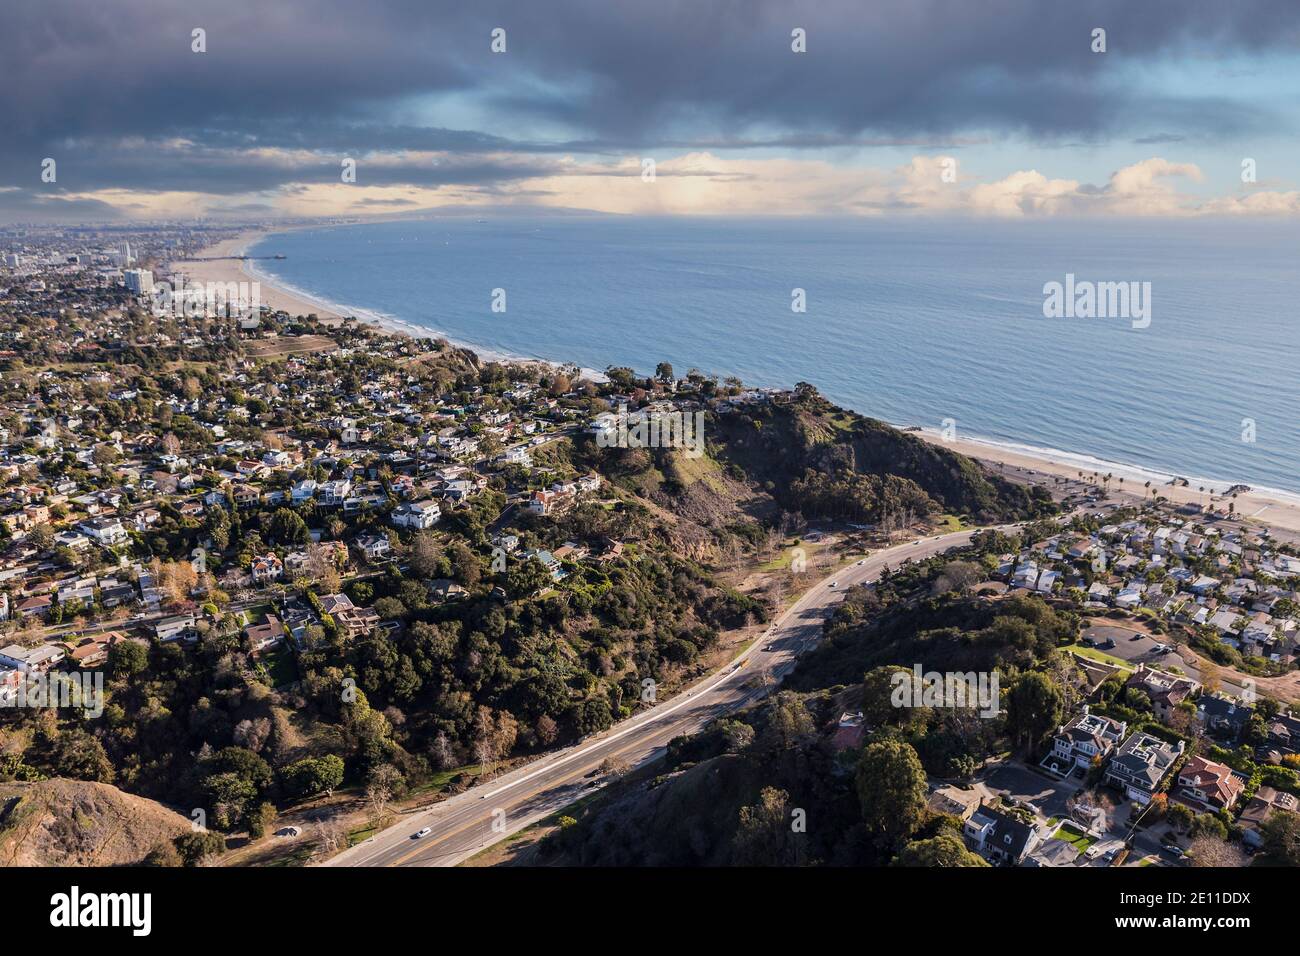 Antenne des quartiers Temescal Canyon Road et Pacific Palisades avec ciel orageux près de la baie de Santa Monica dans le sud de la Californie. Banque D'Images